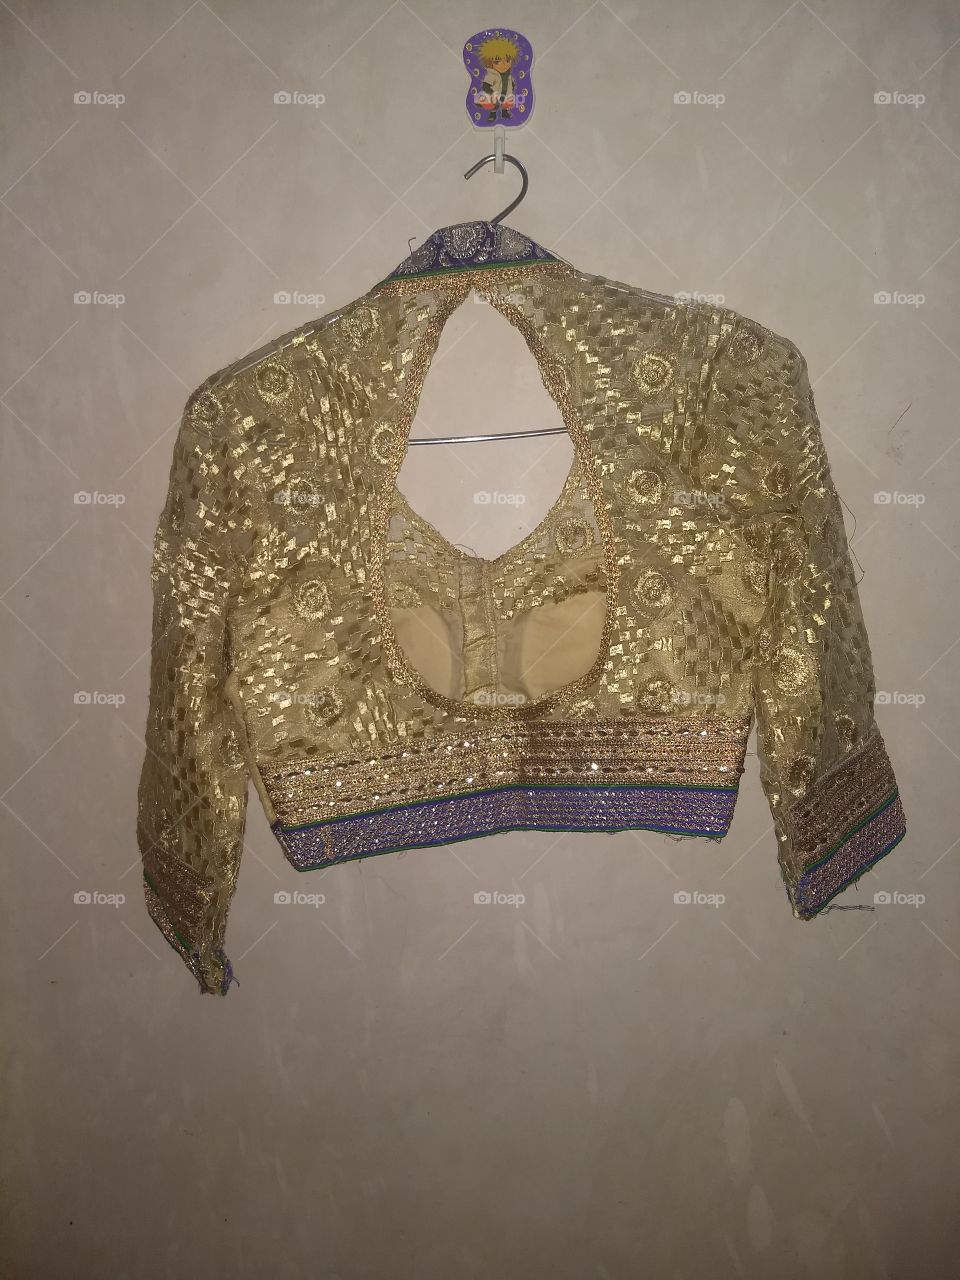 blouse pattern